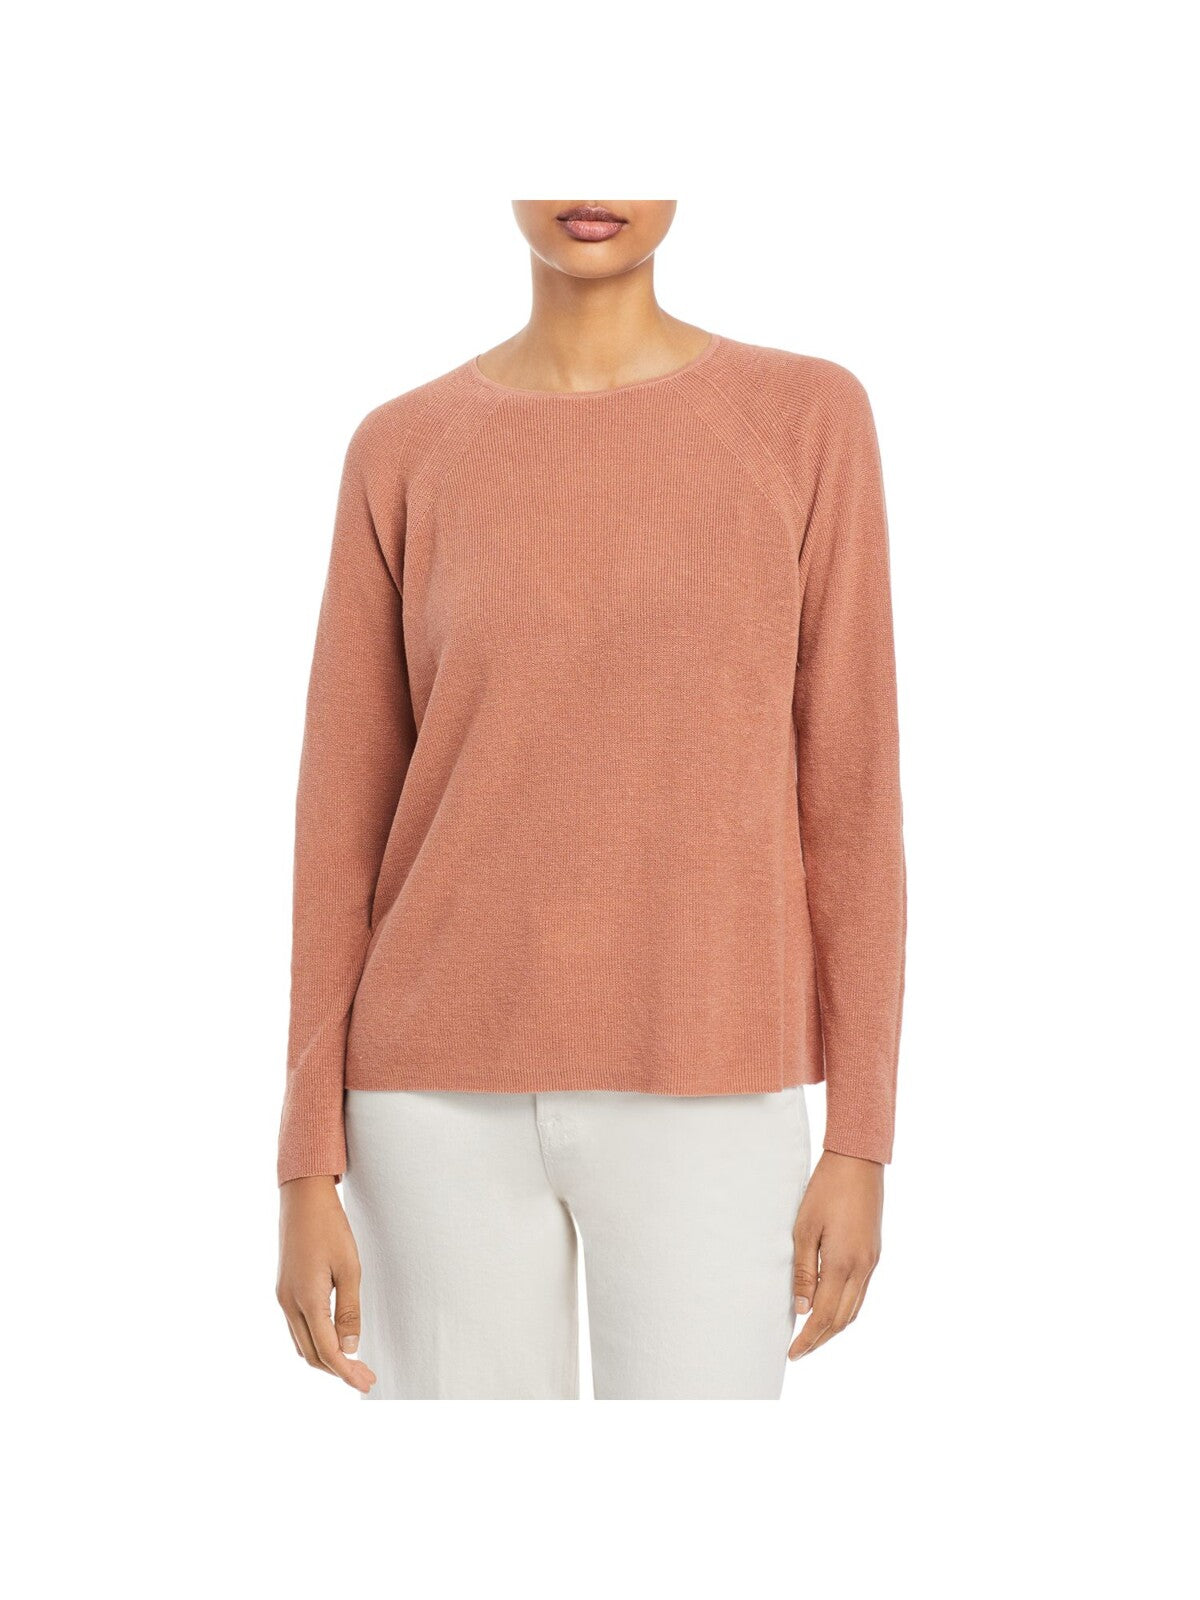 EILEEN FISHER Womens Orange Cotton Blend Round Neck Sweater Plus 1X